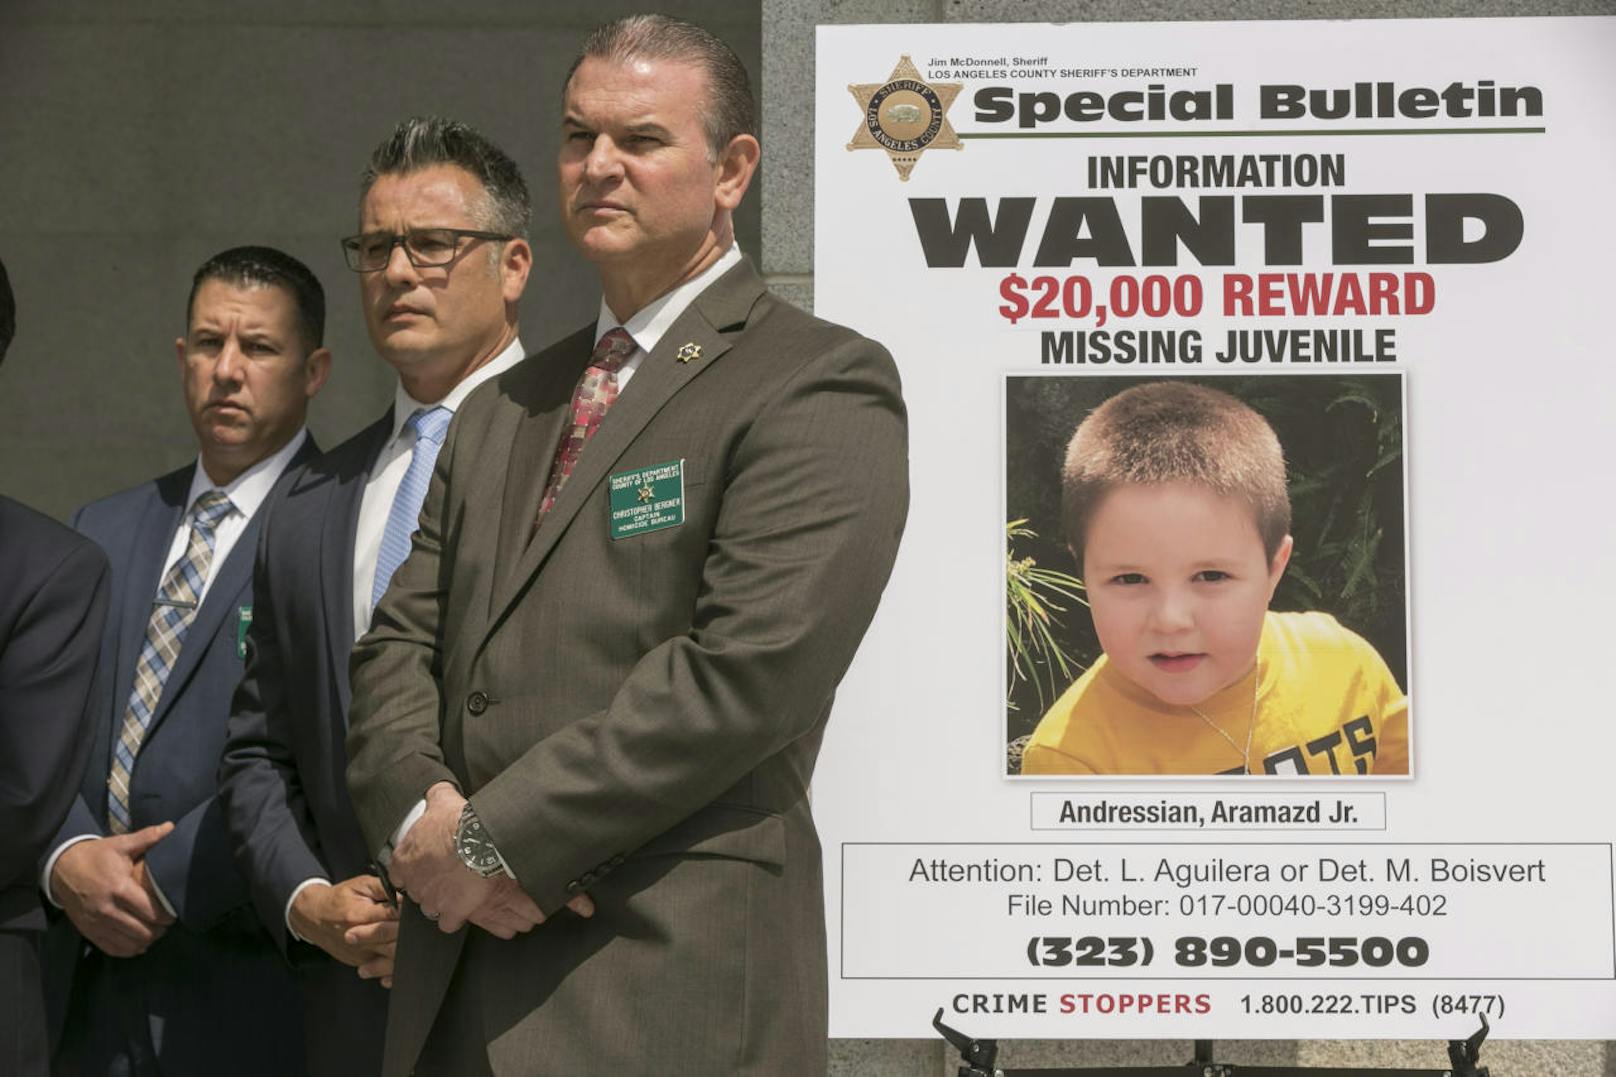 Alles vergeblich: Zwei Monate lang hatte die Polizei den kleinen Aramazd Andressian Jr. (5) gesucht. Jetzt kam heraus: Sein Vater hatte ihn getötet.